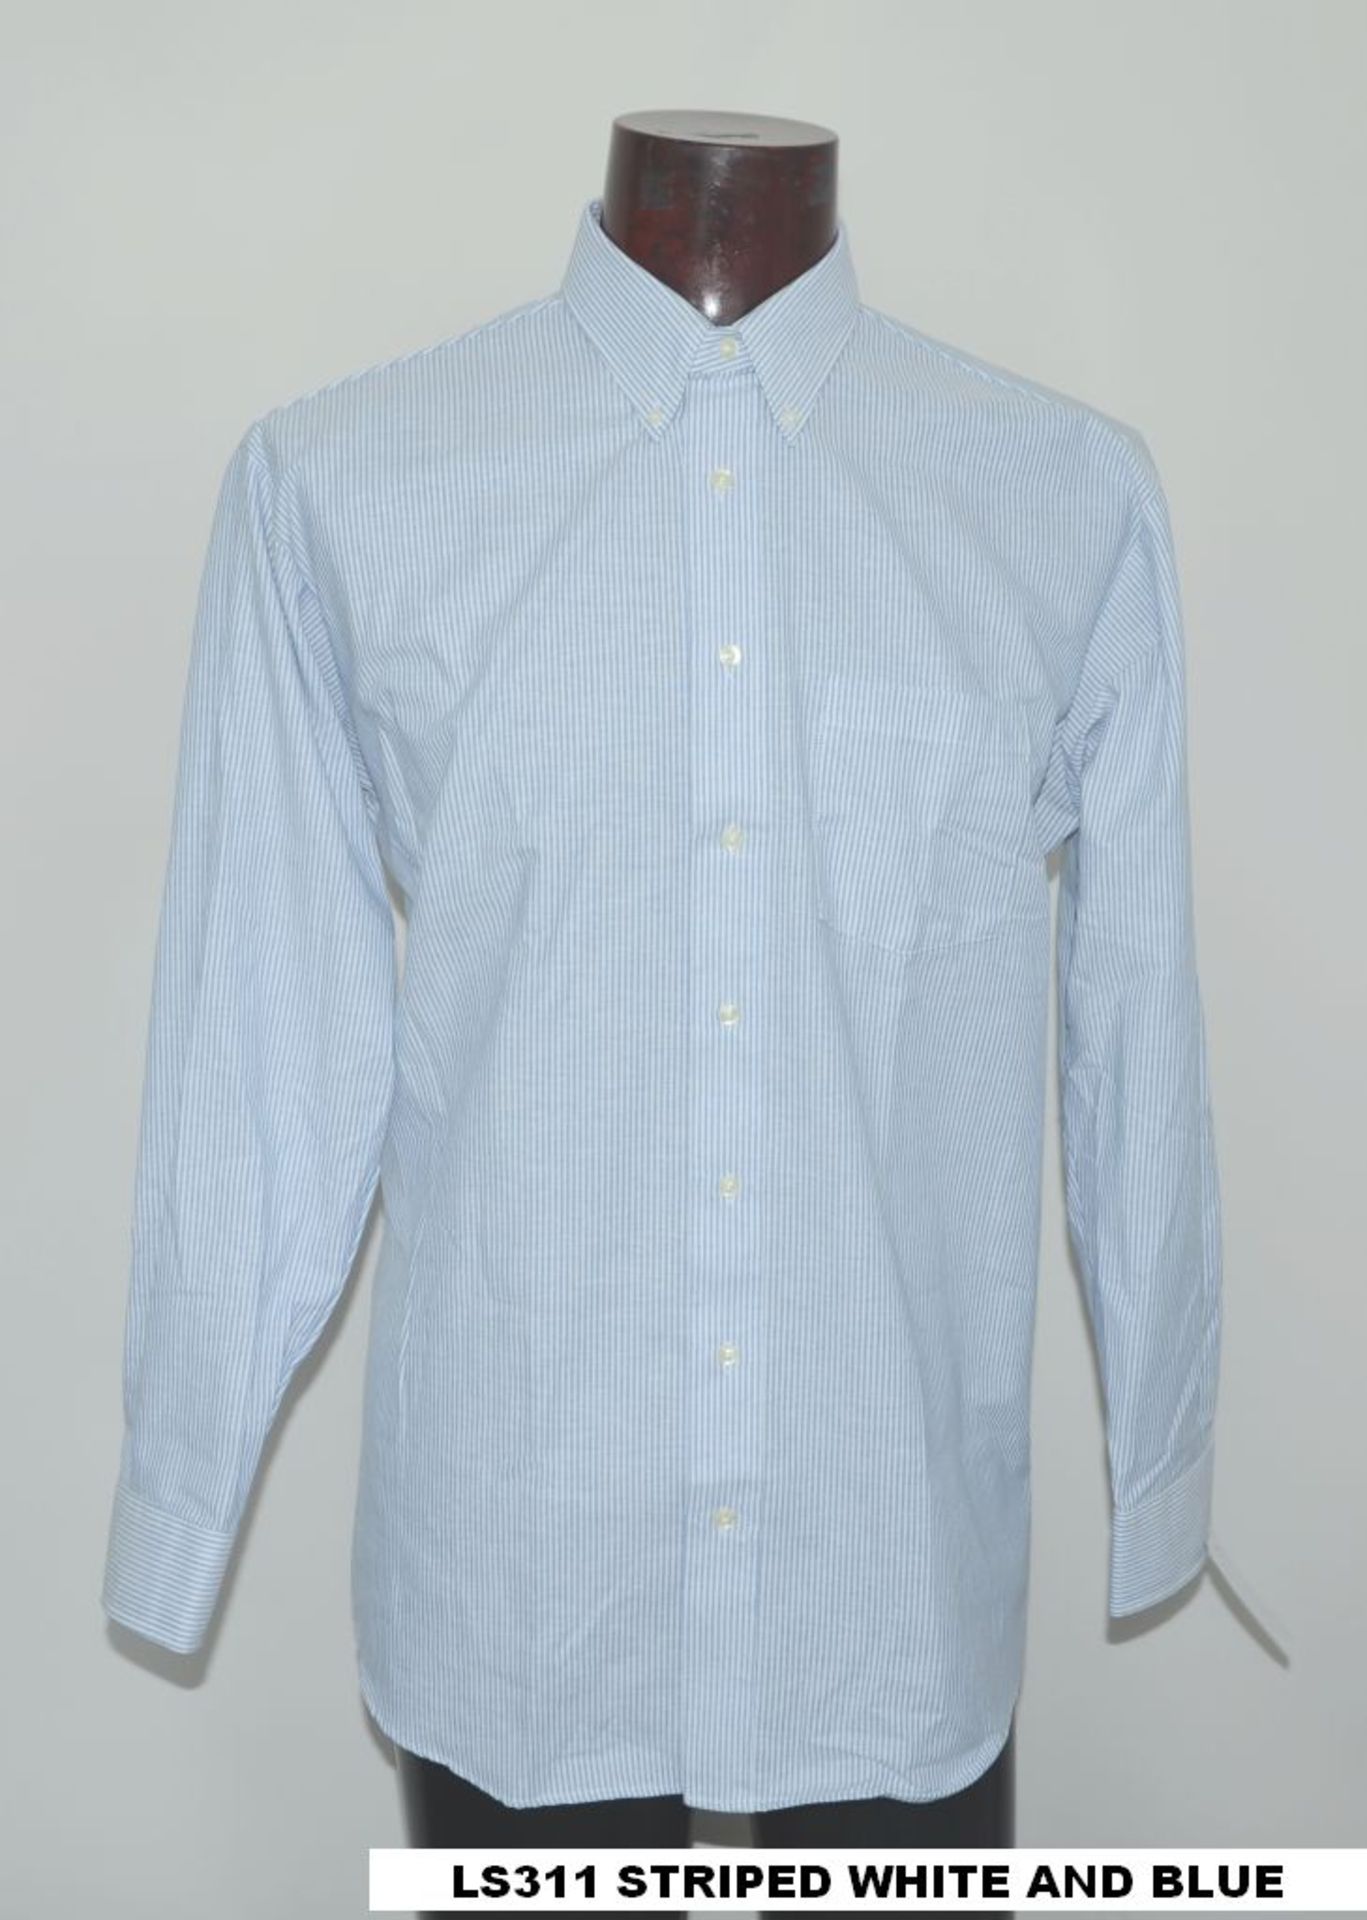 66 x Shirt L/S / Striped white/blue & white/grey / LS311